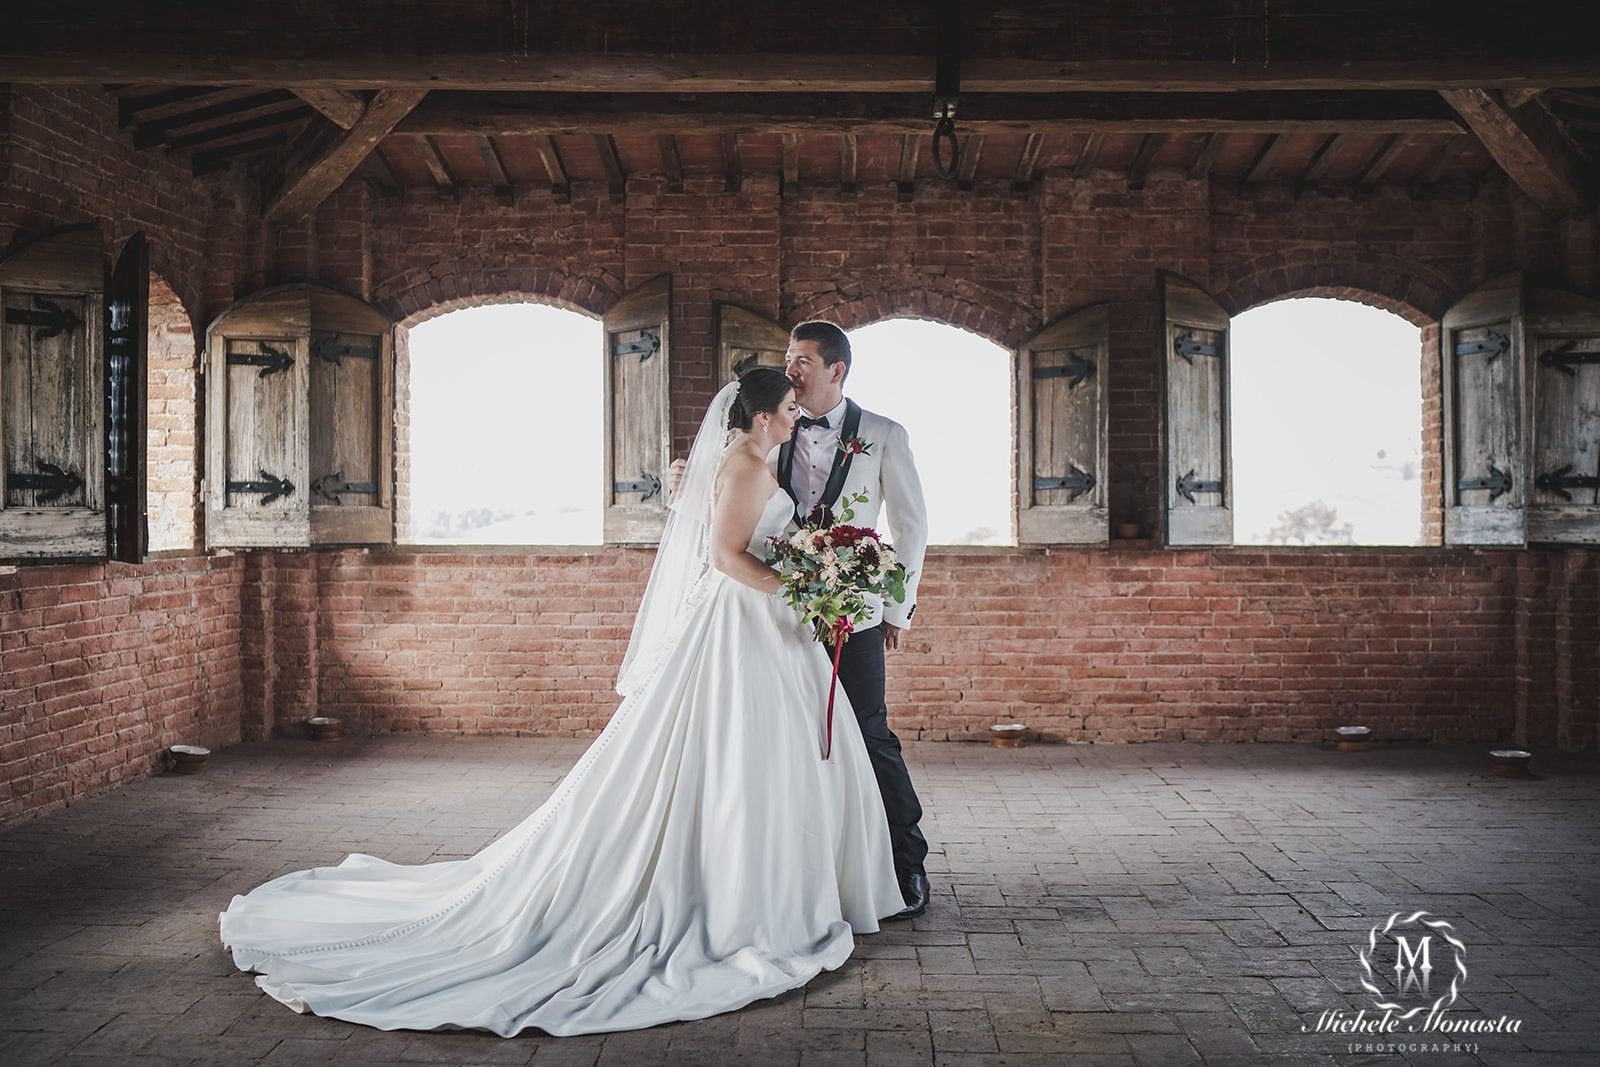 Lauren & Josh - Get married in a castle in Siena